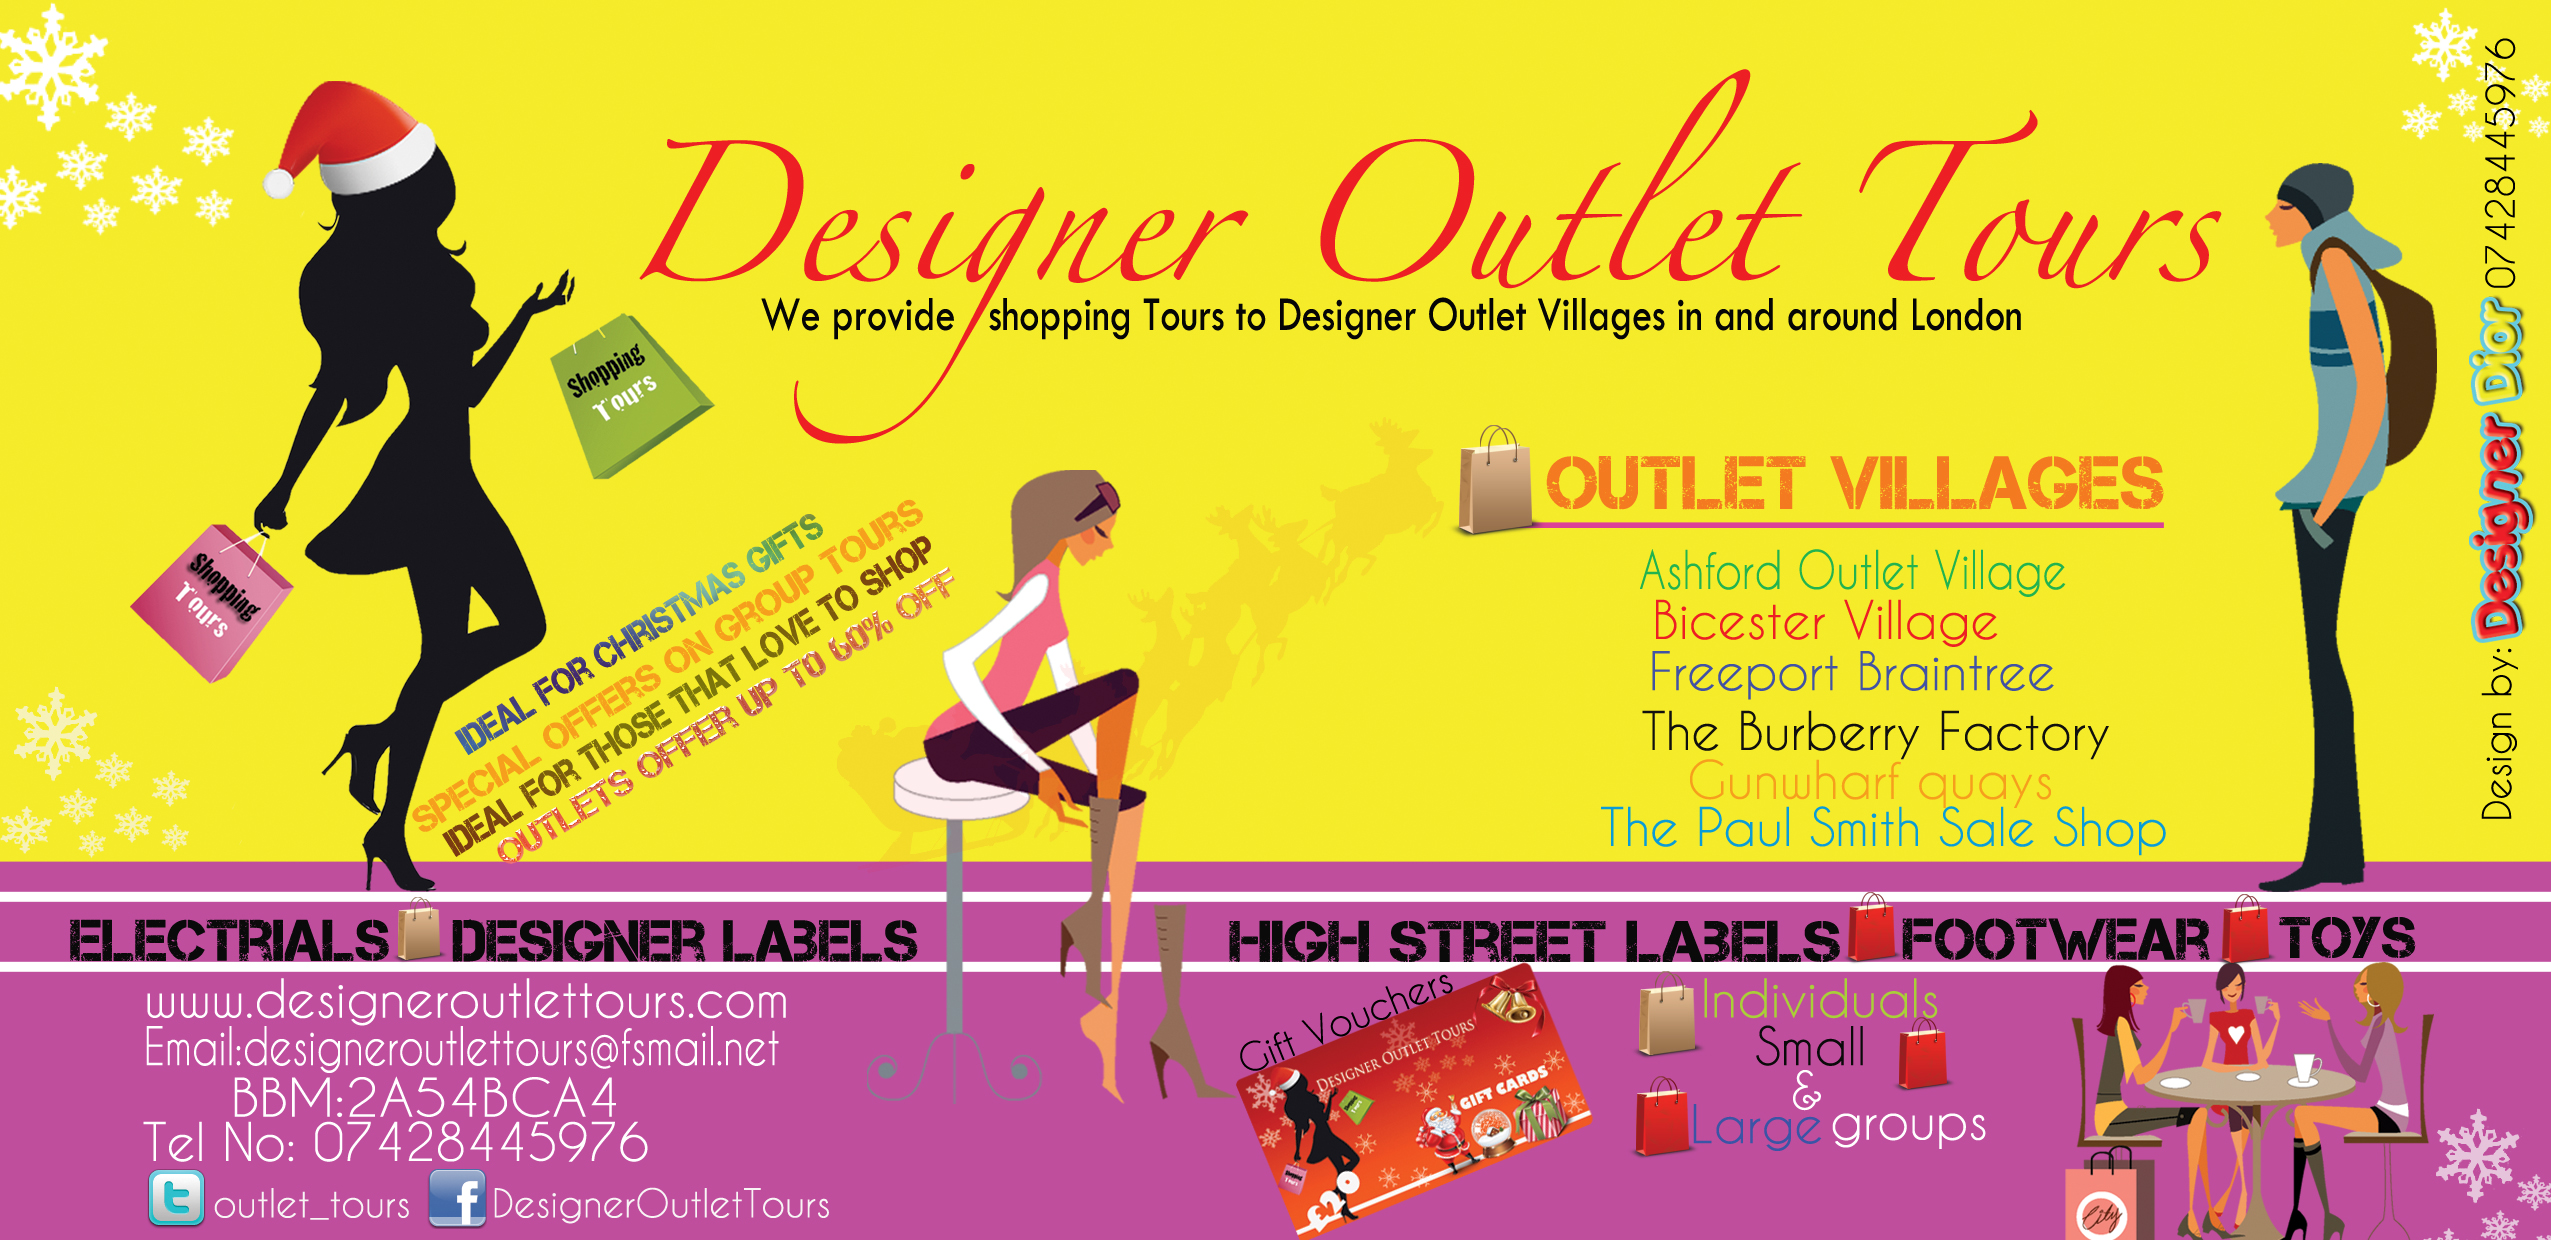 designer outlet tours DL leaflet christmas logo.jpg